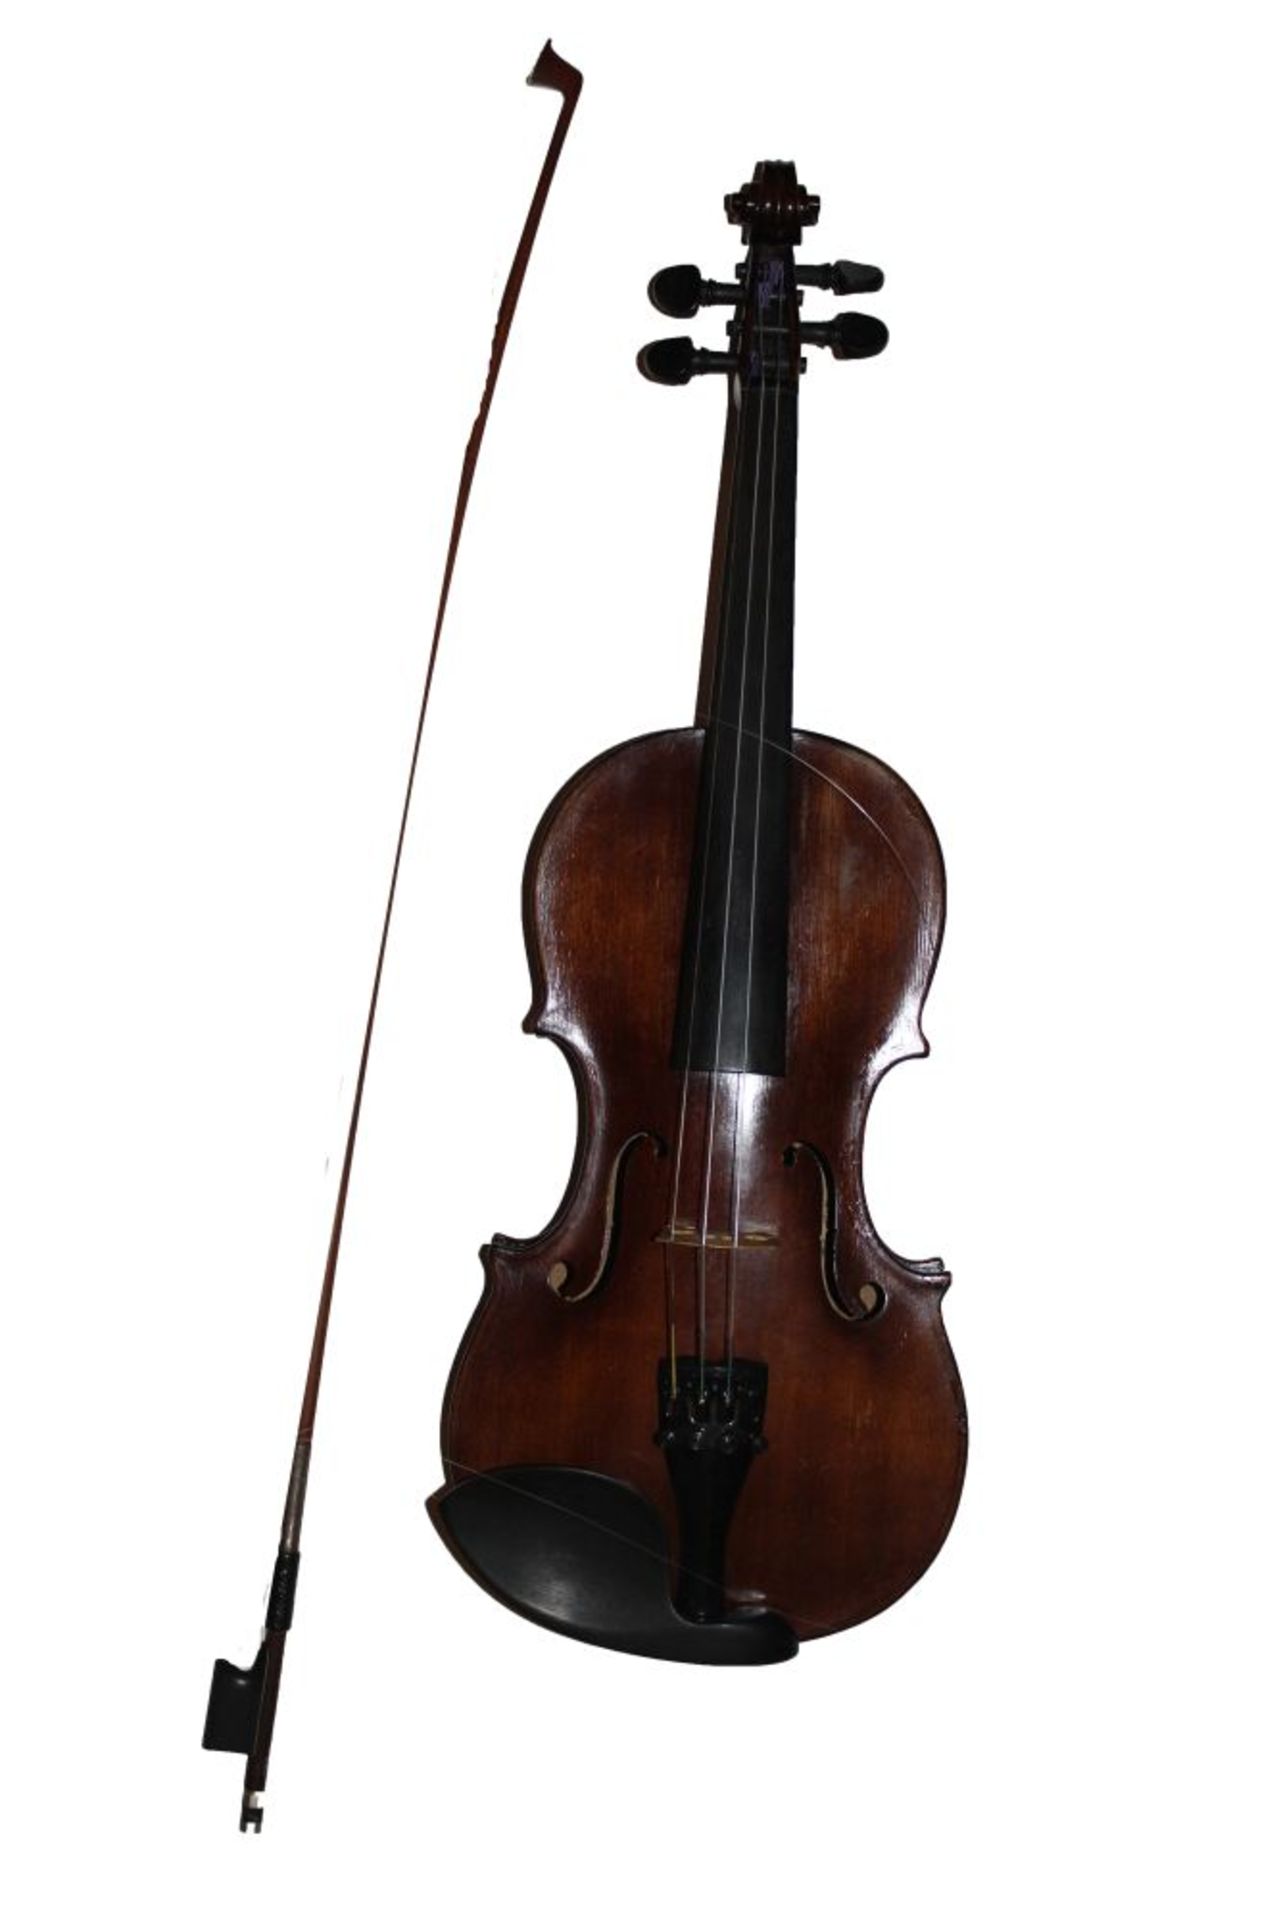 Geige Etikett in Druck bez.: "Joa. Bapt. Havelka fecit anno 1741", Altersspuren, Länge ca. 59 cm,